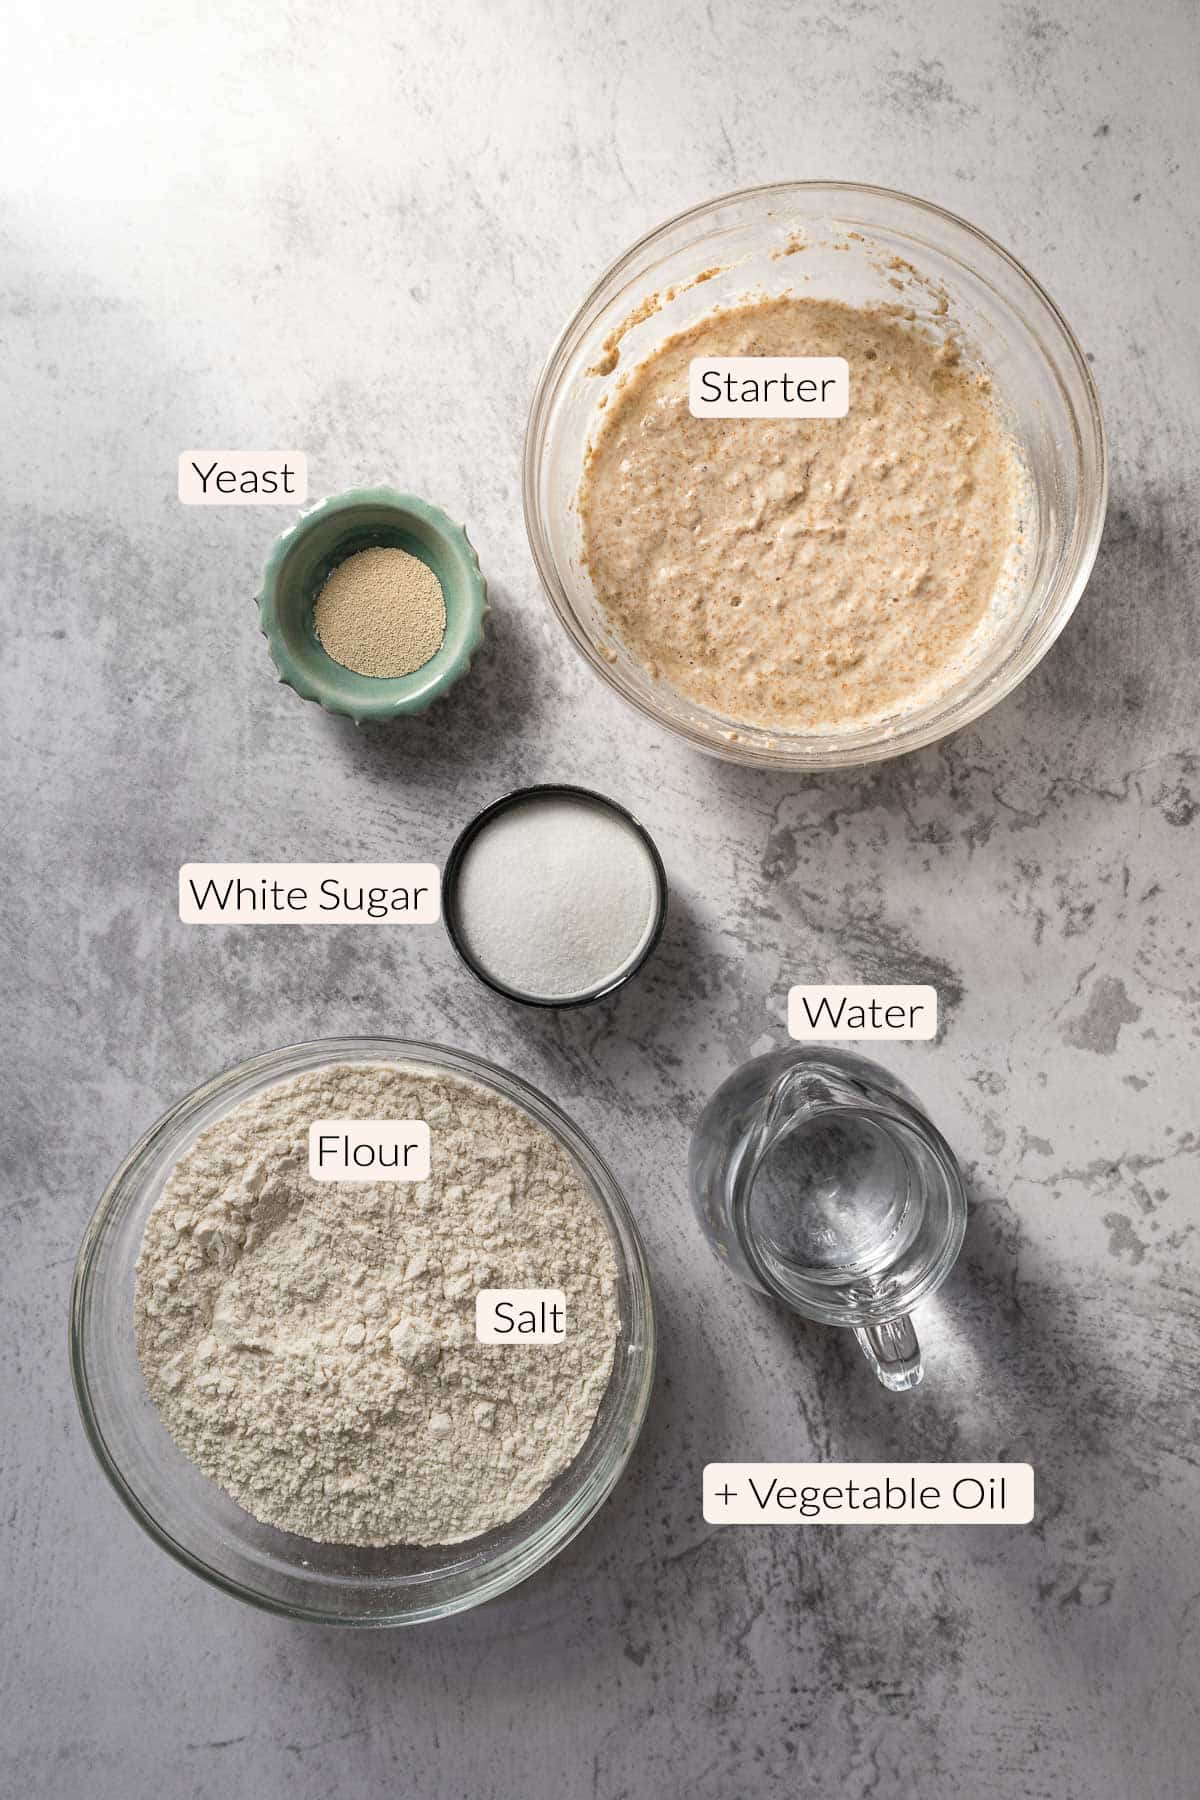 Country bread ingredients - flour, starter, salt, yeast, sugar, water, vegetable oil.